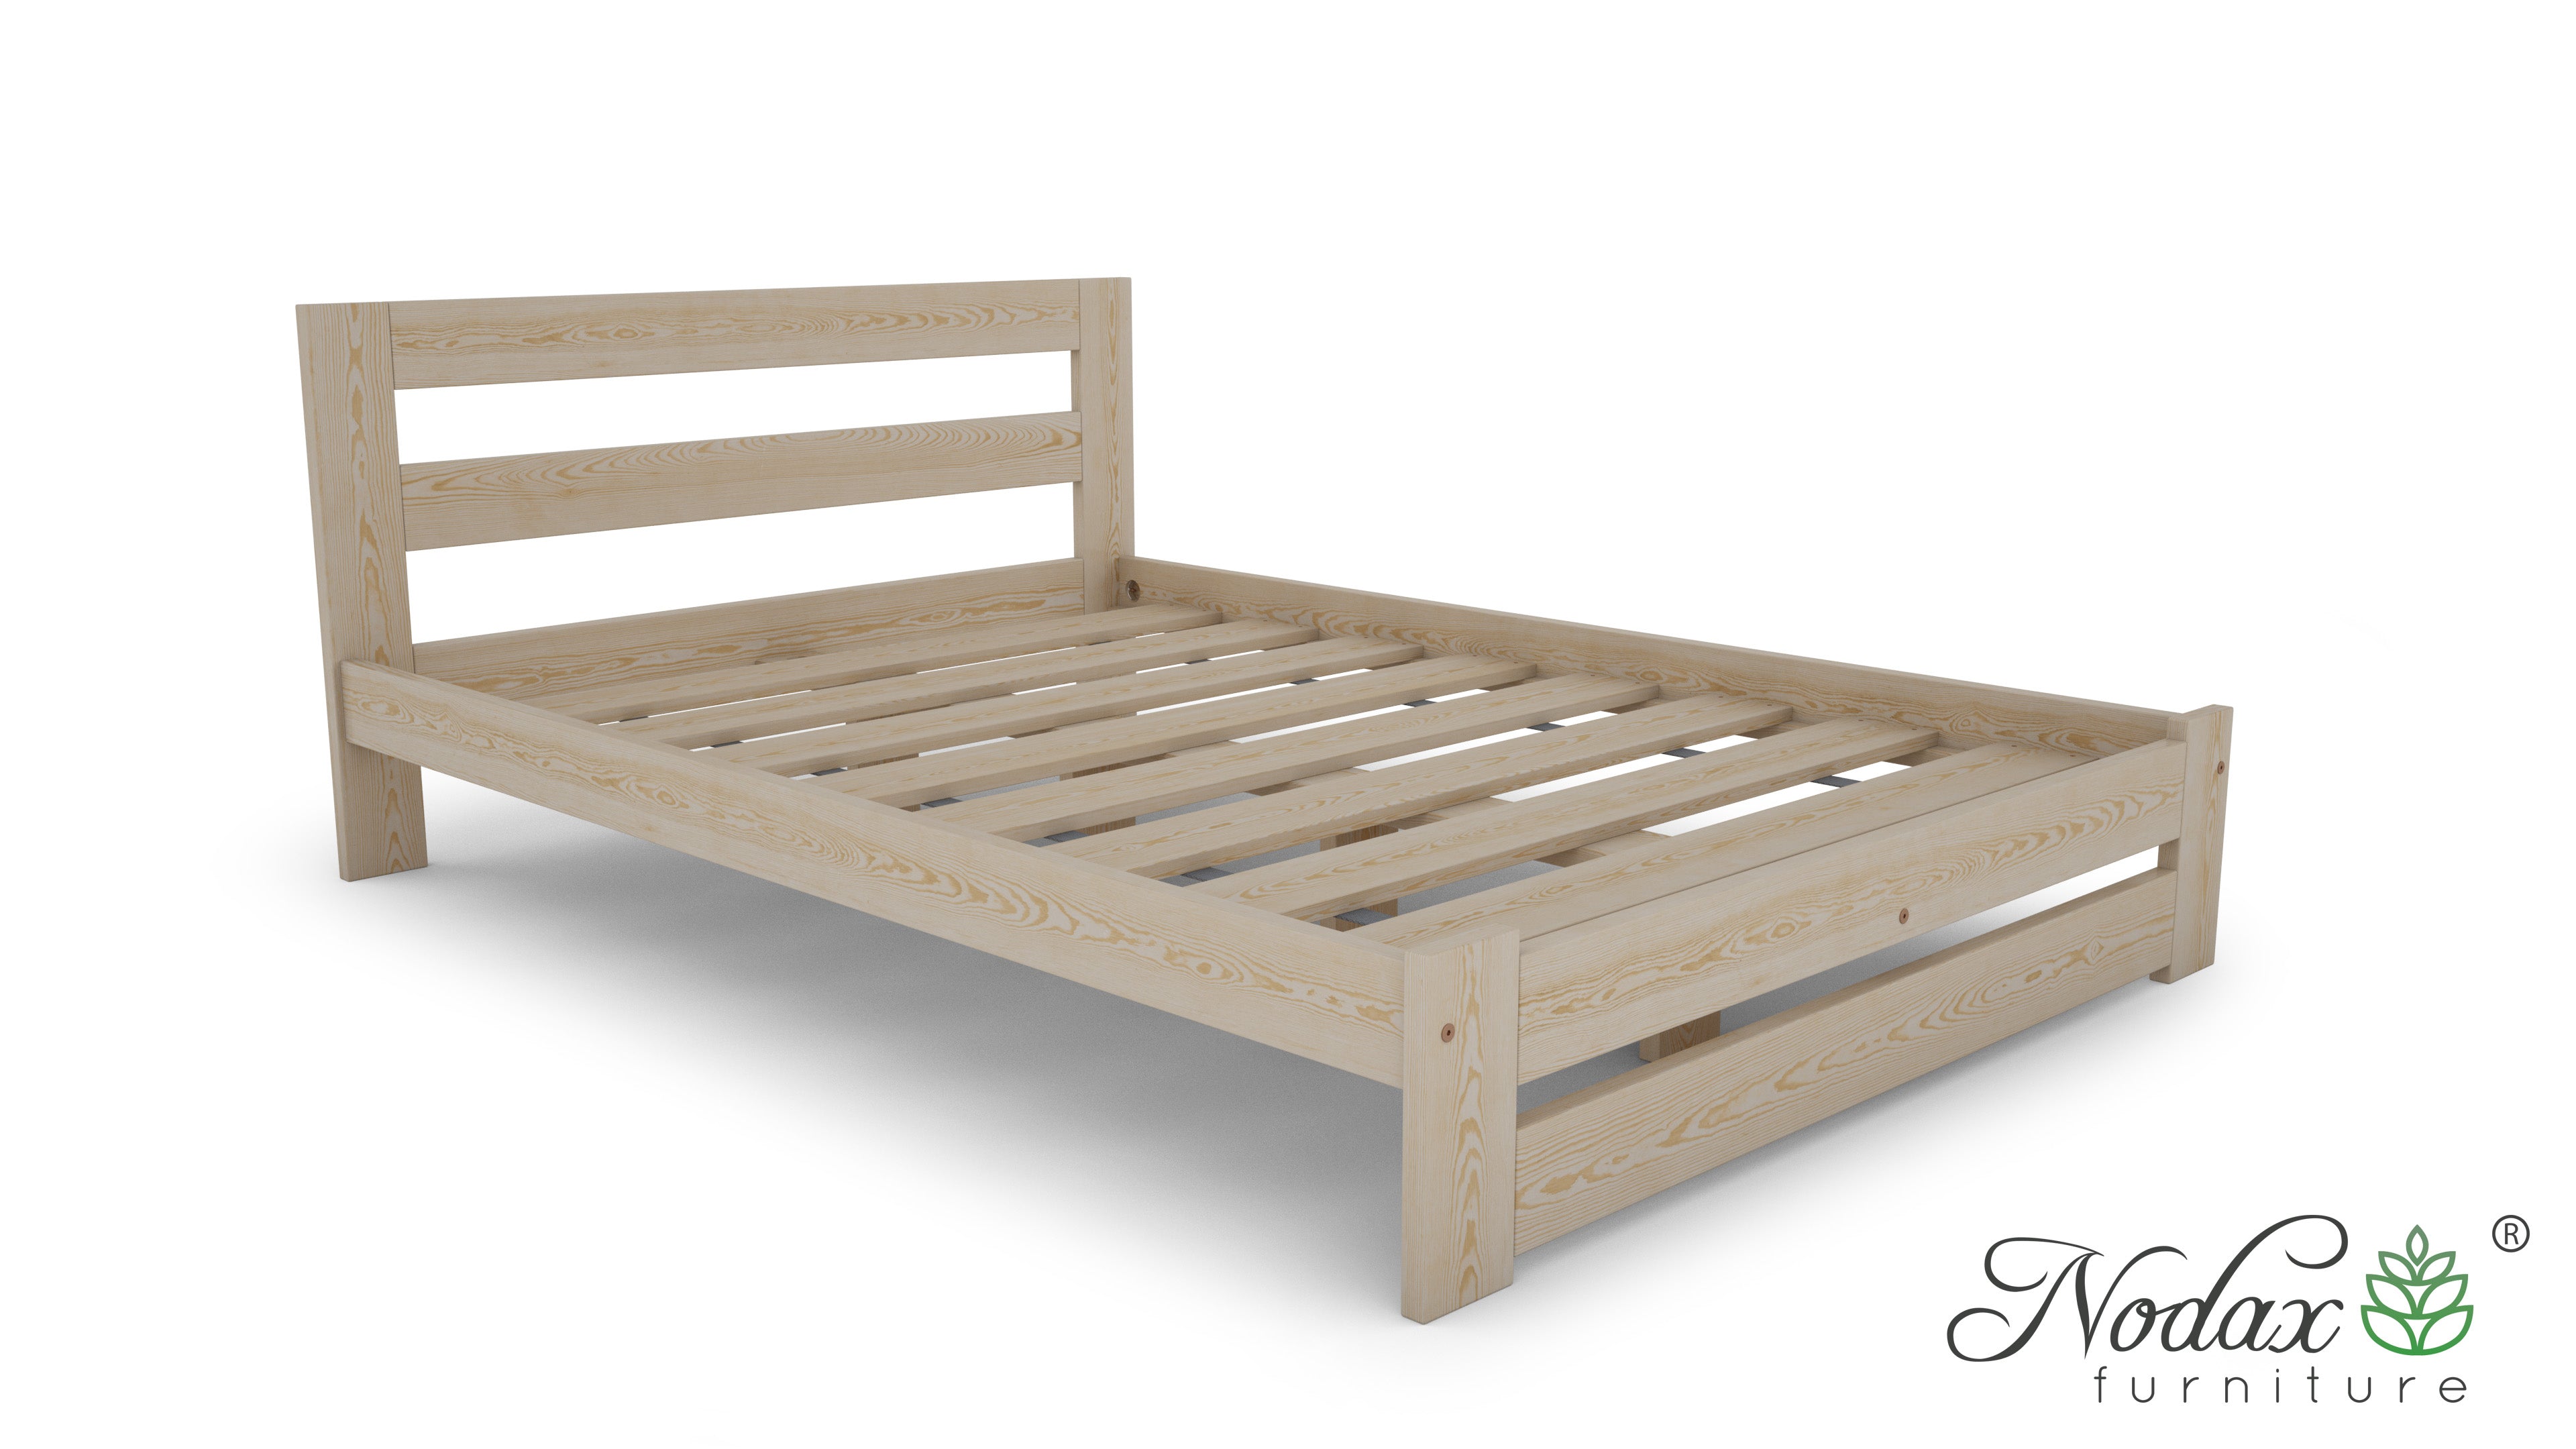 Wooden-bed-frame-Pine-5ft